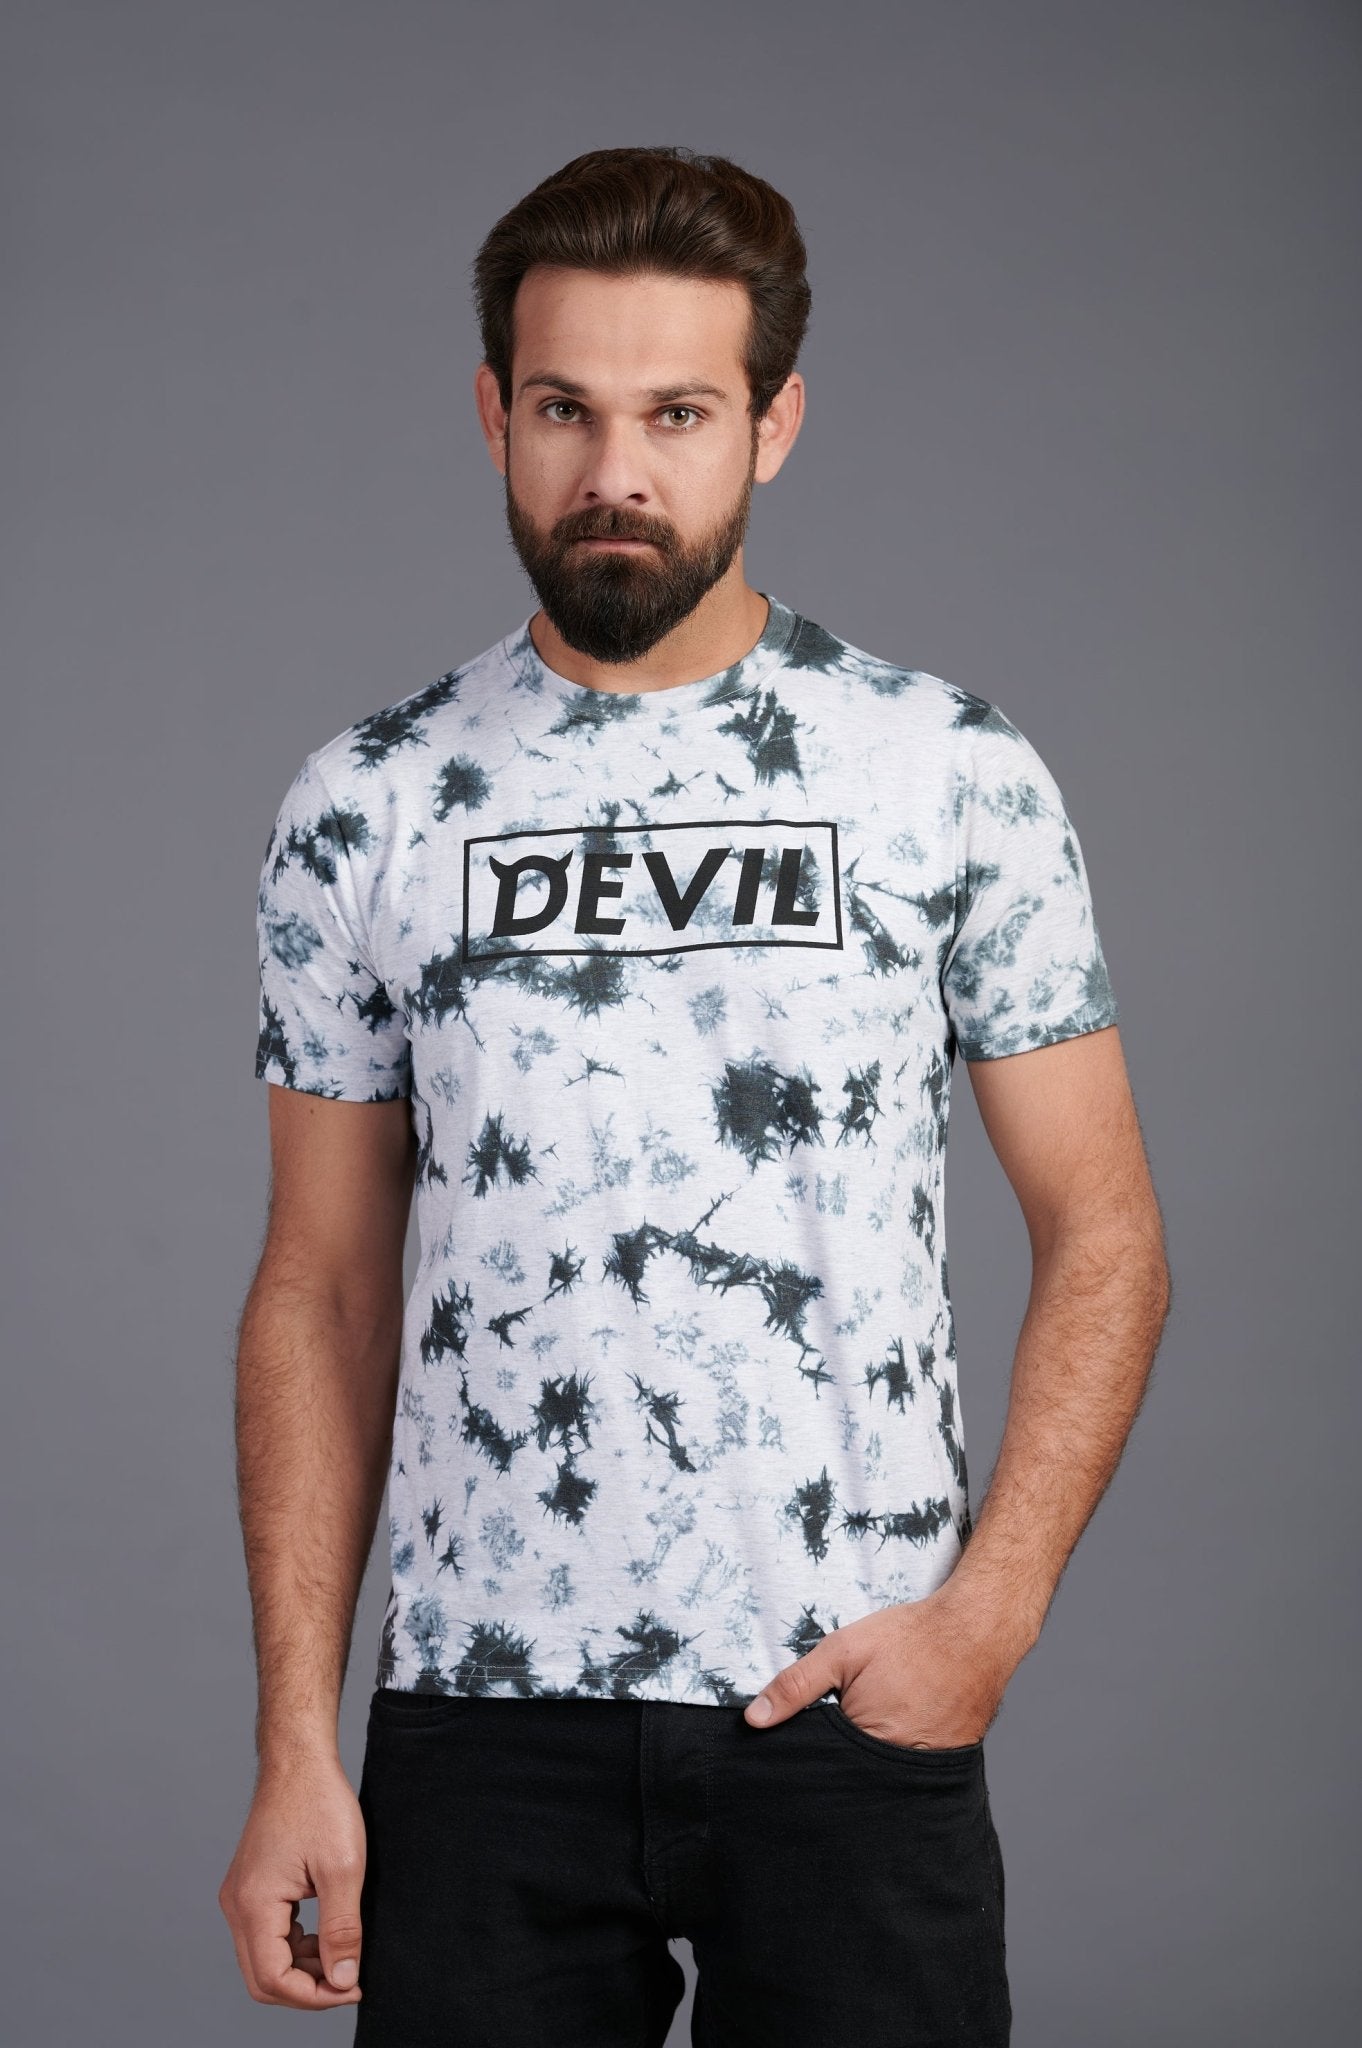 Devil Printed T-Shirt for Men - Go Devil